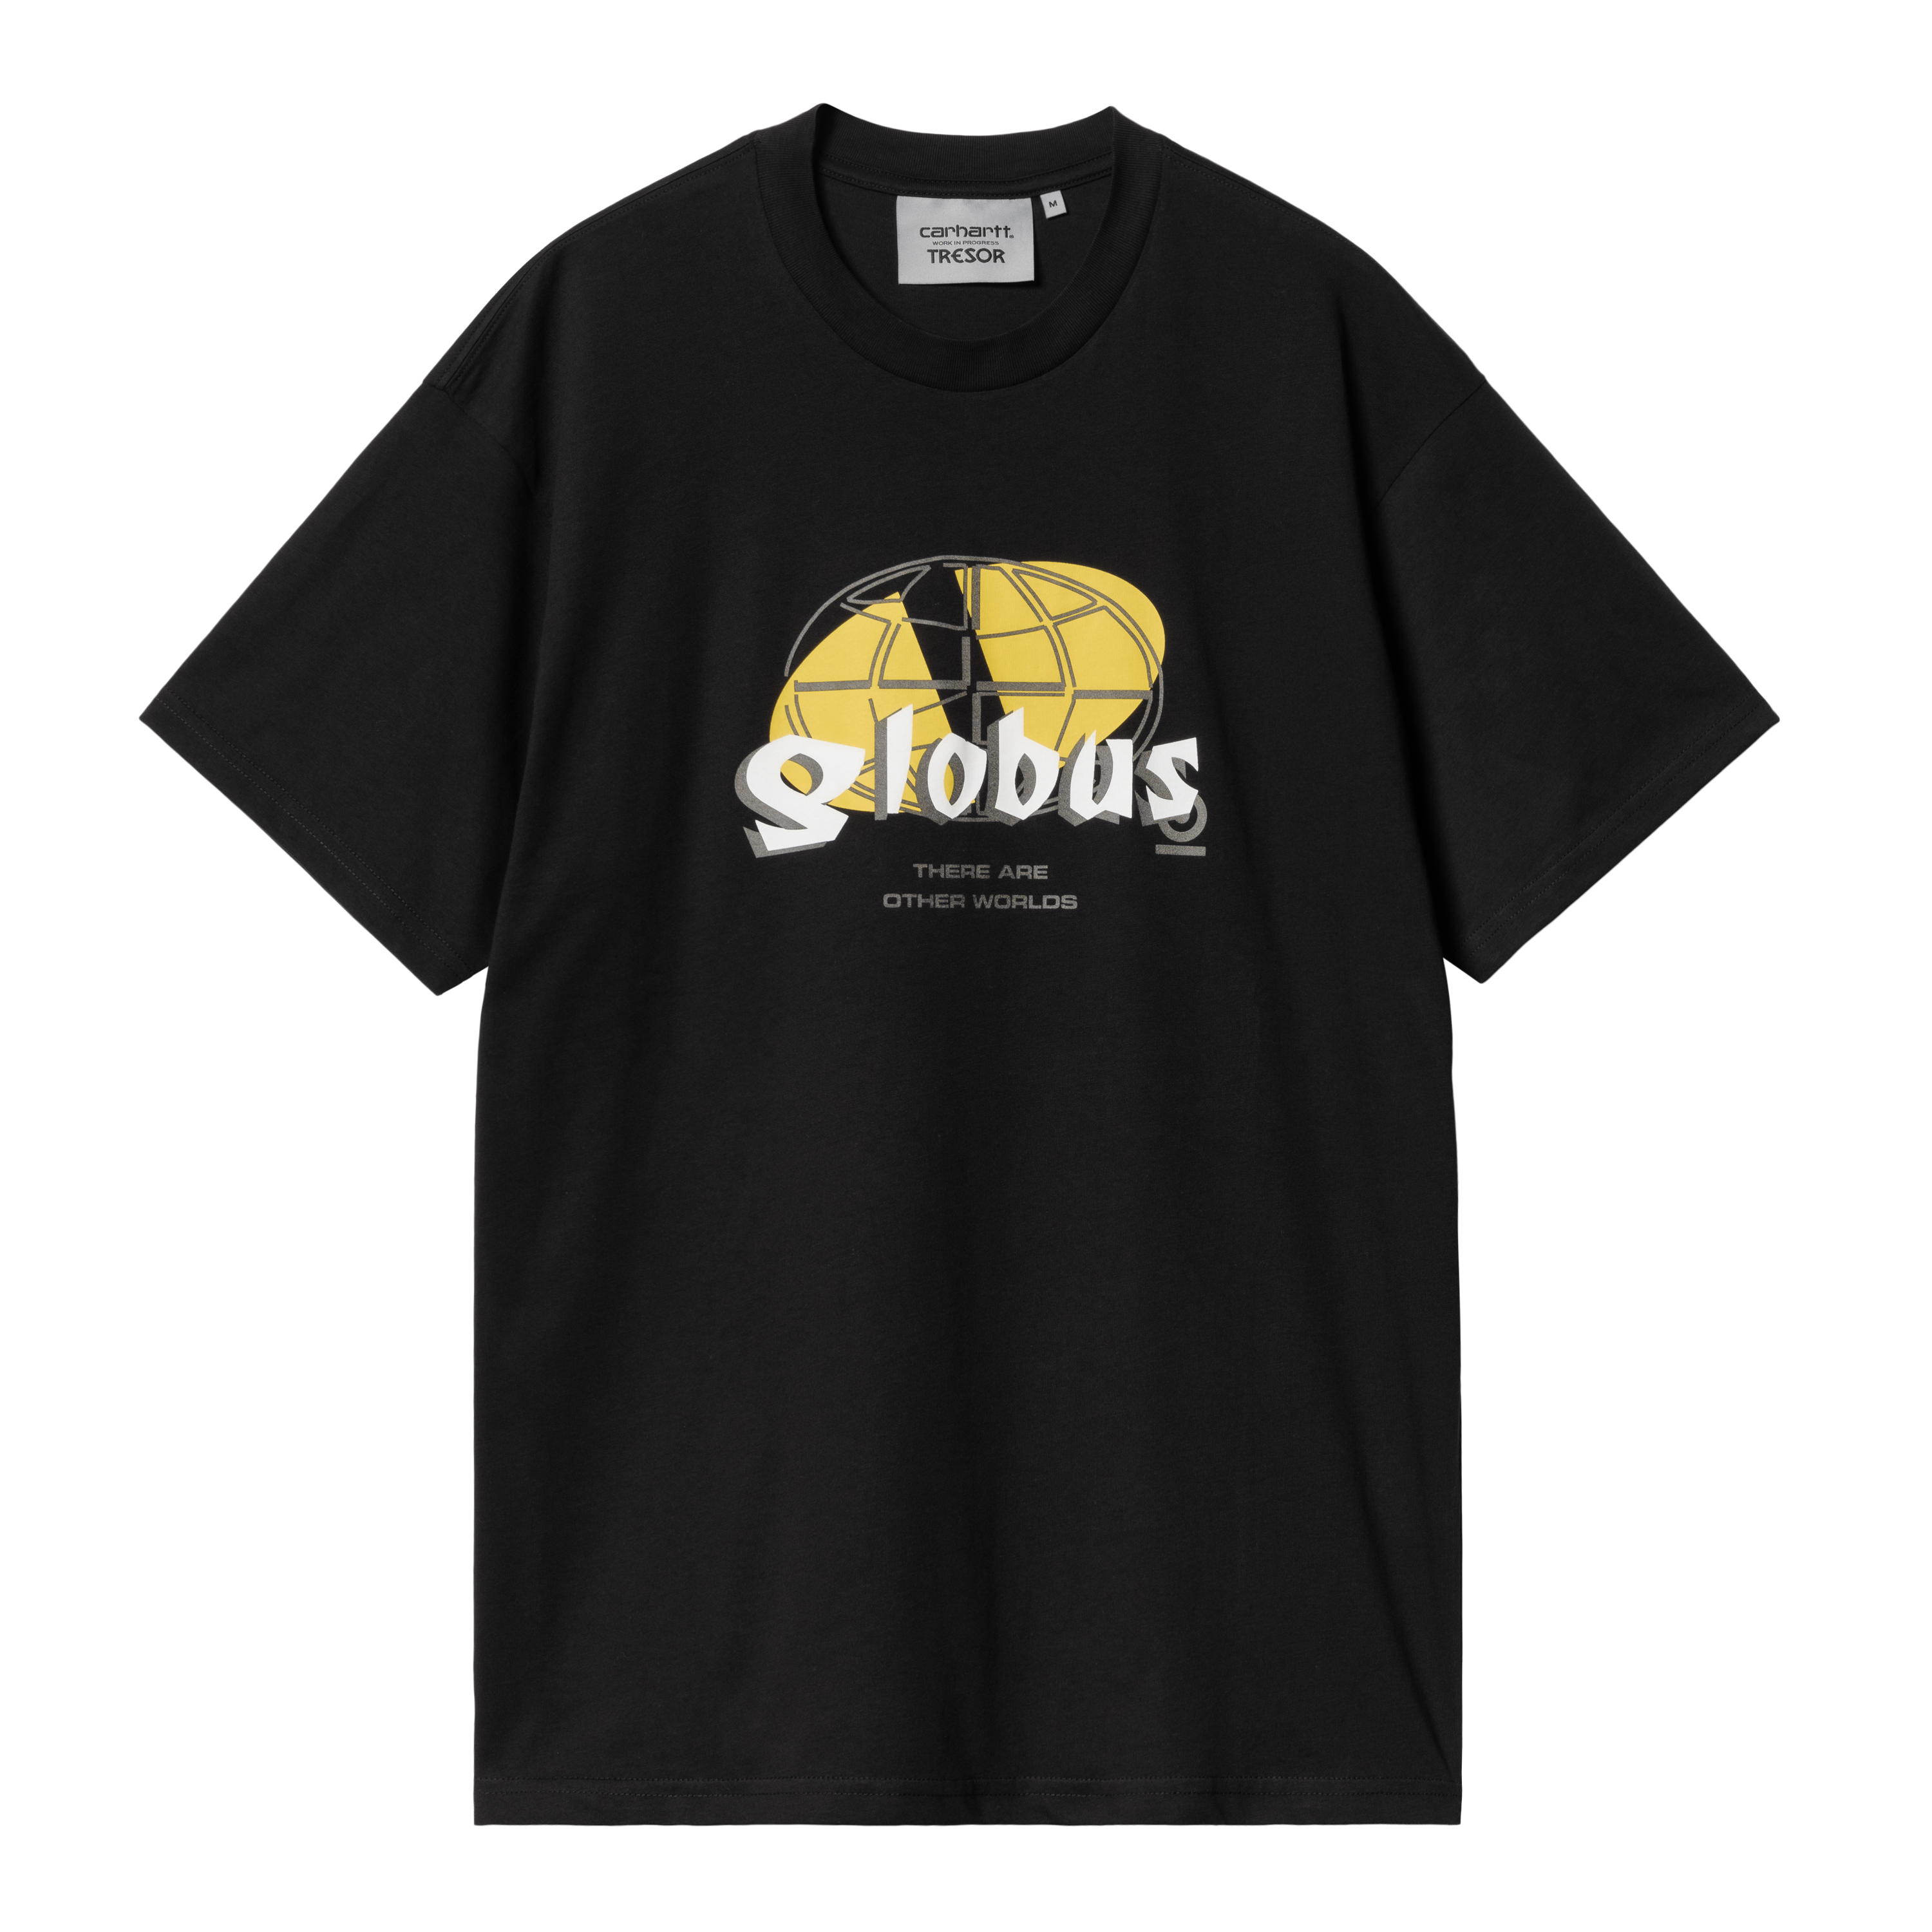 Carhartt WIP Carhartt WIP x TRESOR Globus Short Sleeve T-Shirt en Negro